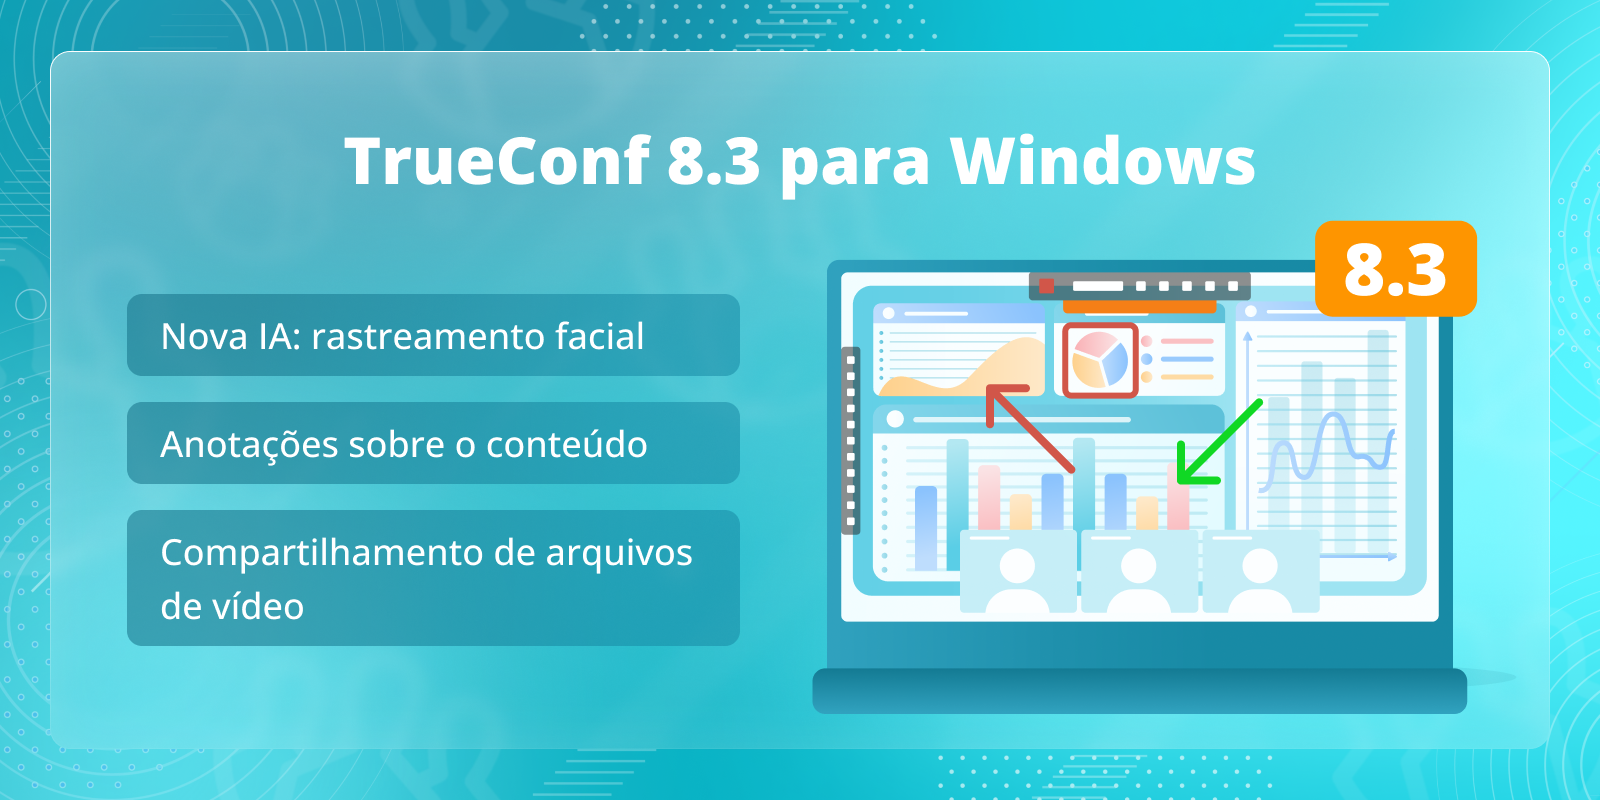 TrueConf 8.3 para Windows: Novo recurso baseado em IA, anotações sobre o conteúdo e compartilhamento de arquivos de vídeo 7